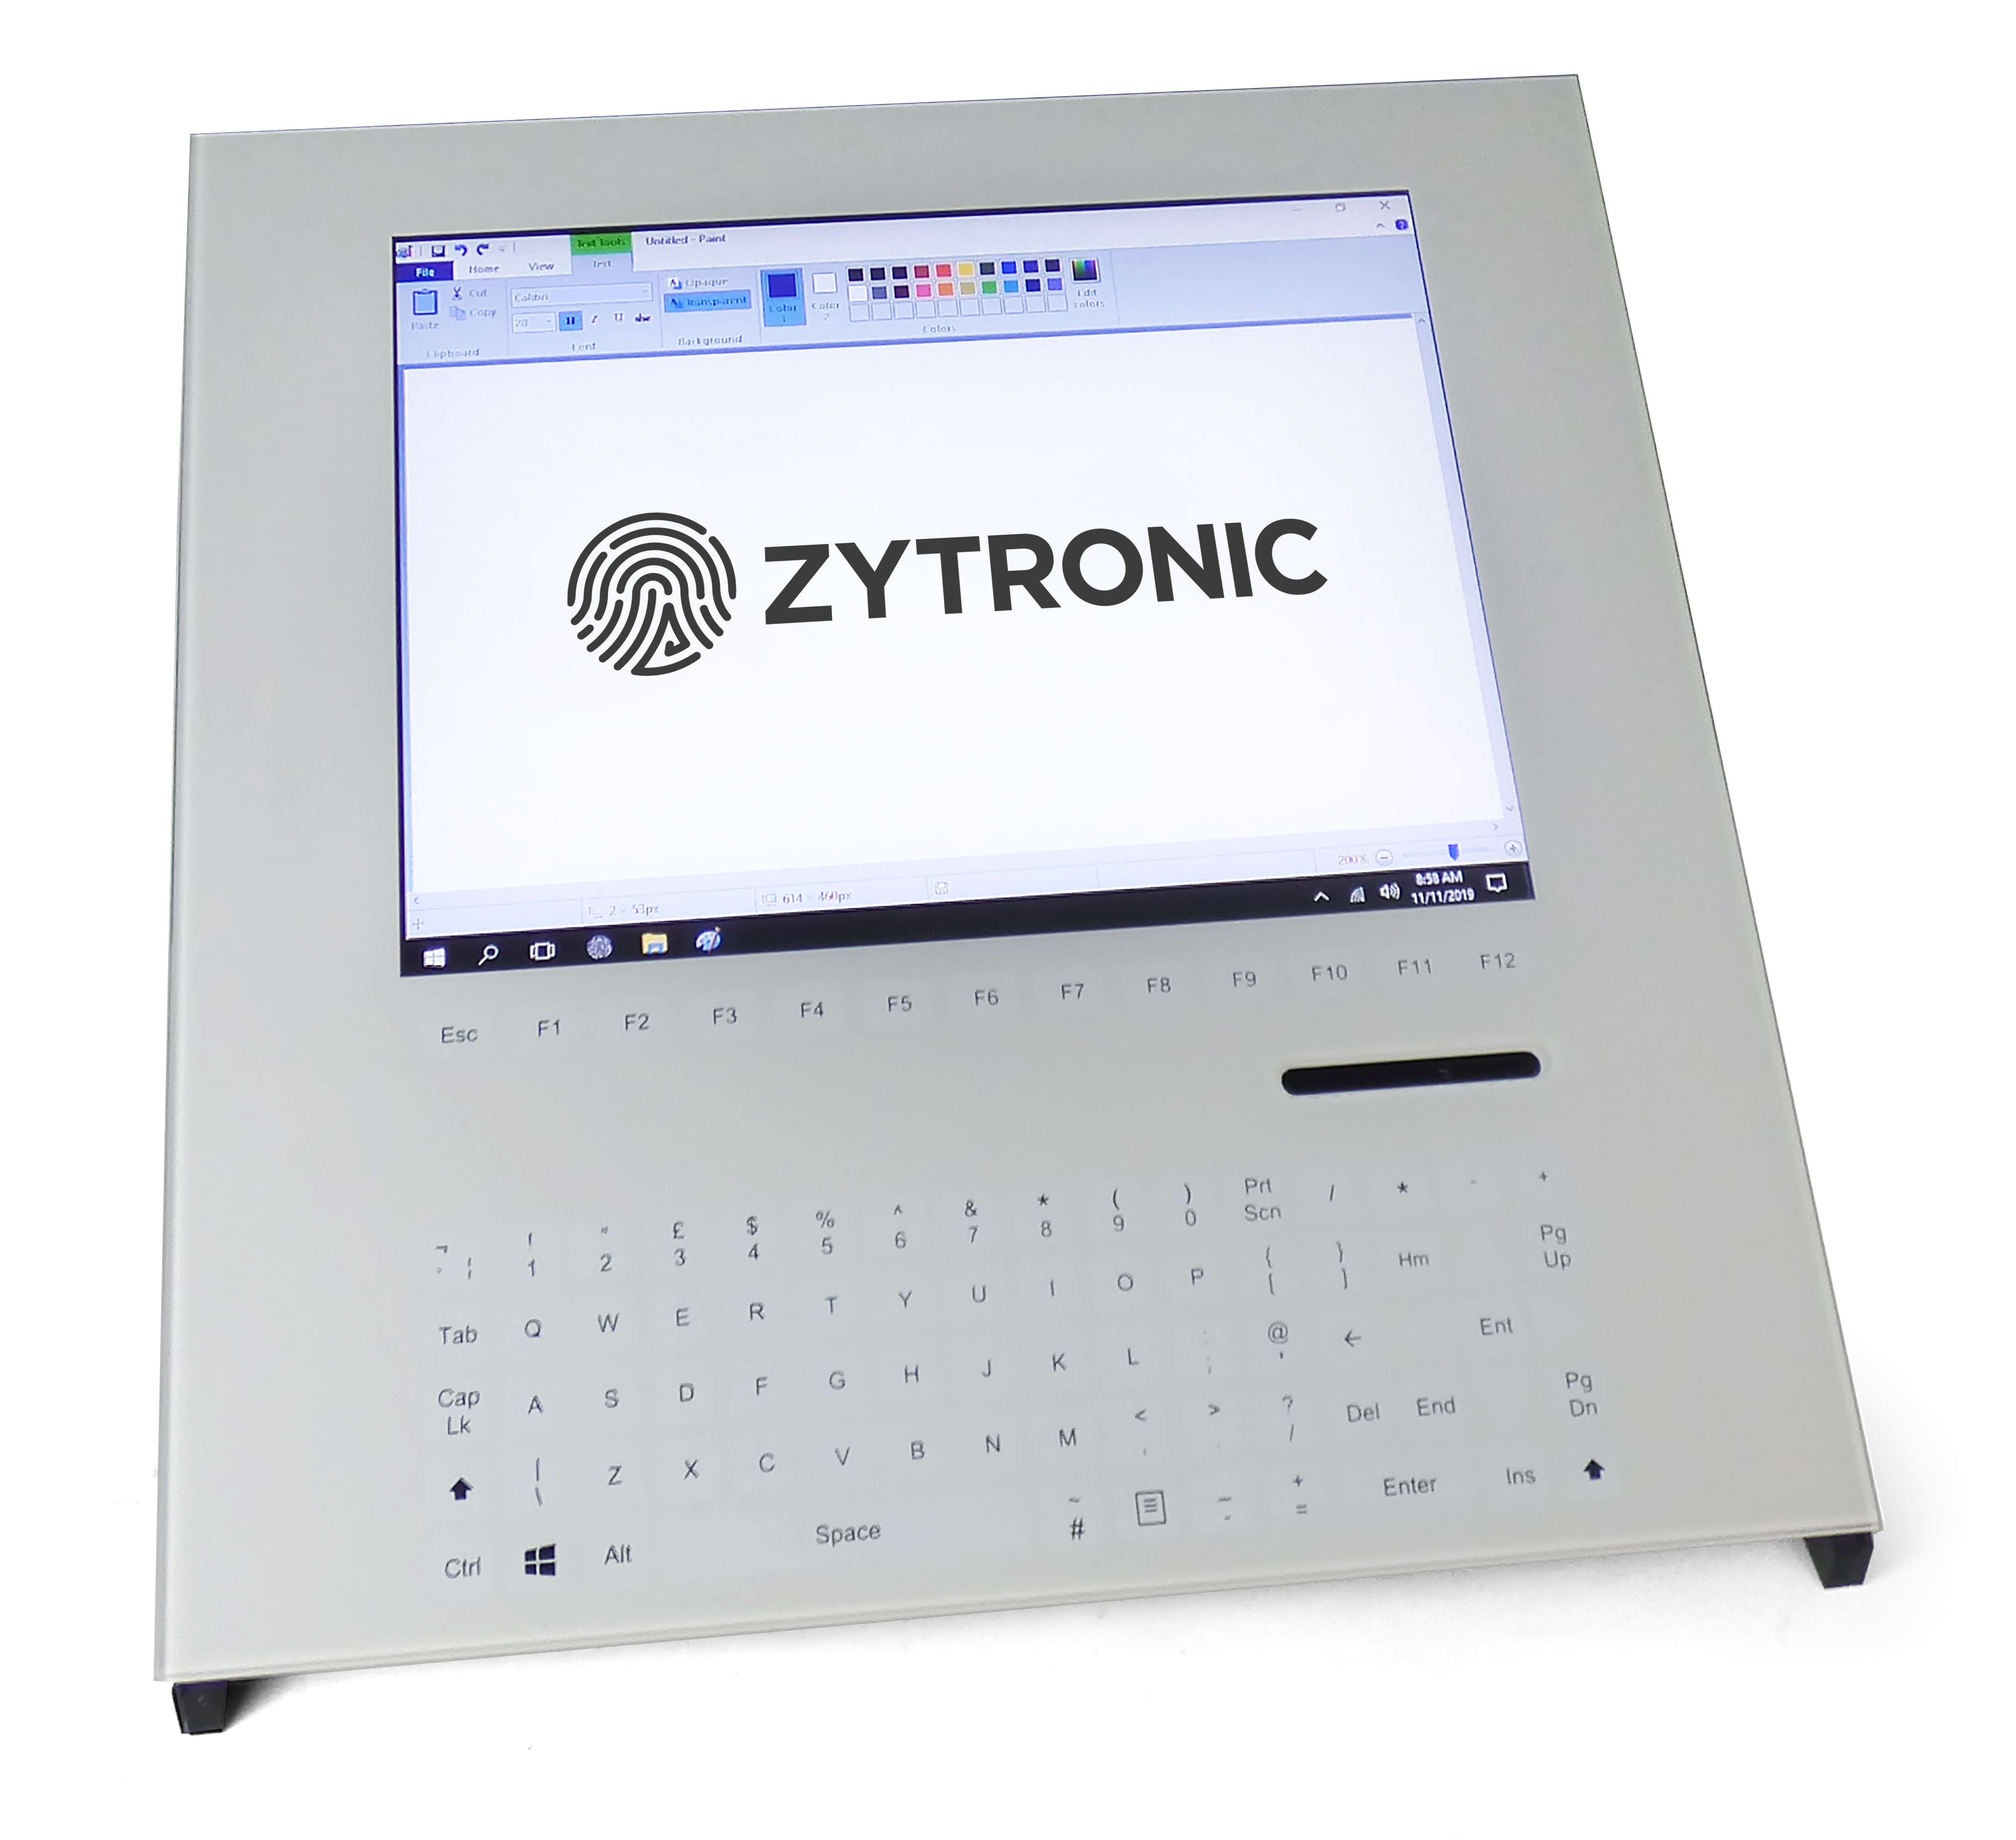 Zytronic触摸/虚拟按钮多合一设计概念为坚固耐用的应用提供了经济高效且可无限配置的界面